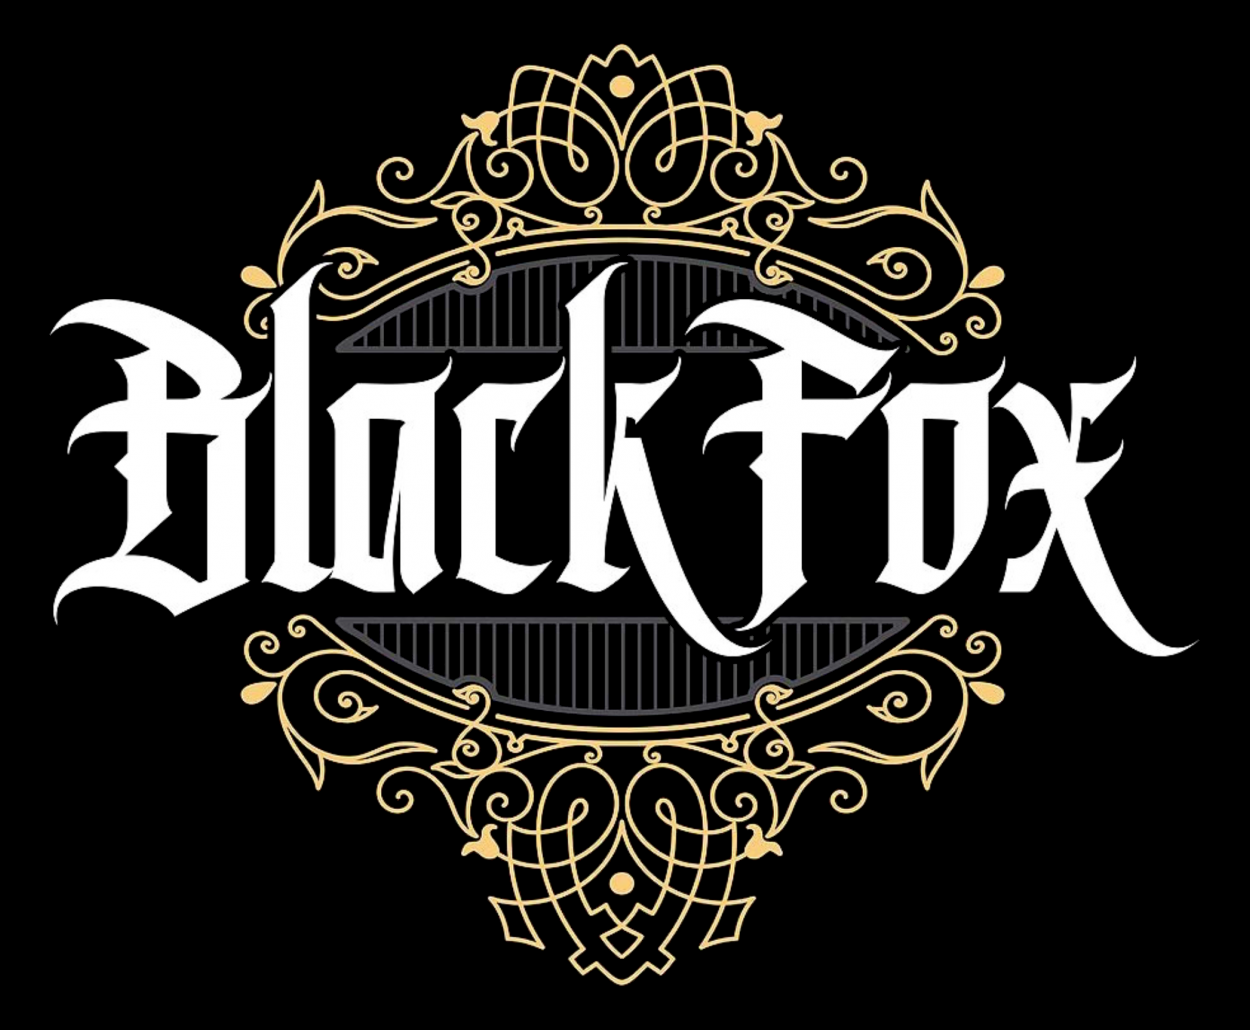 Fox font